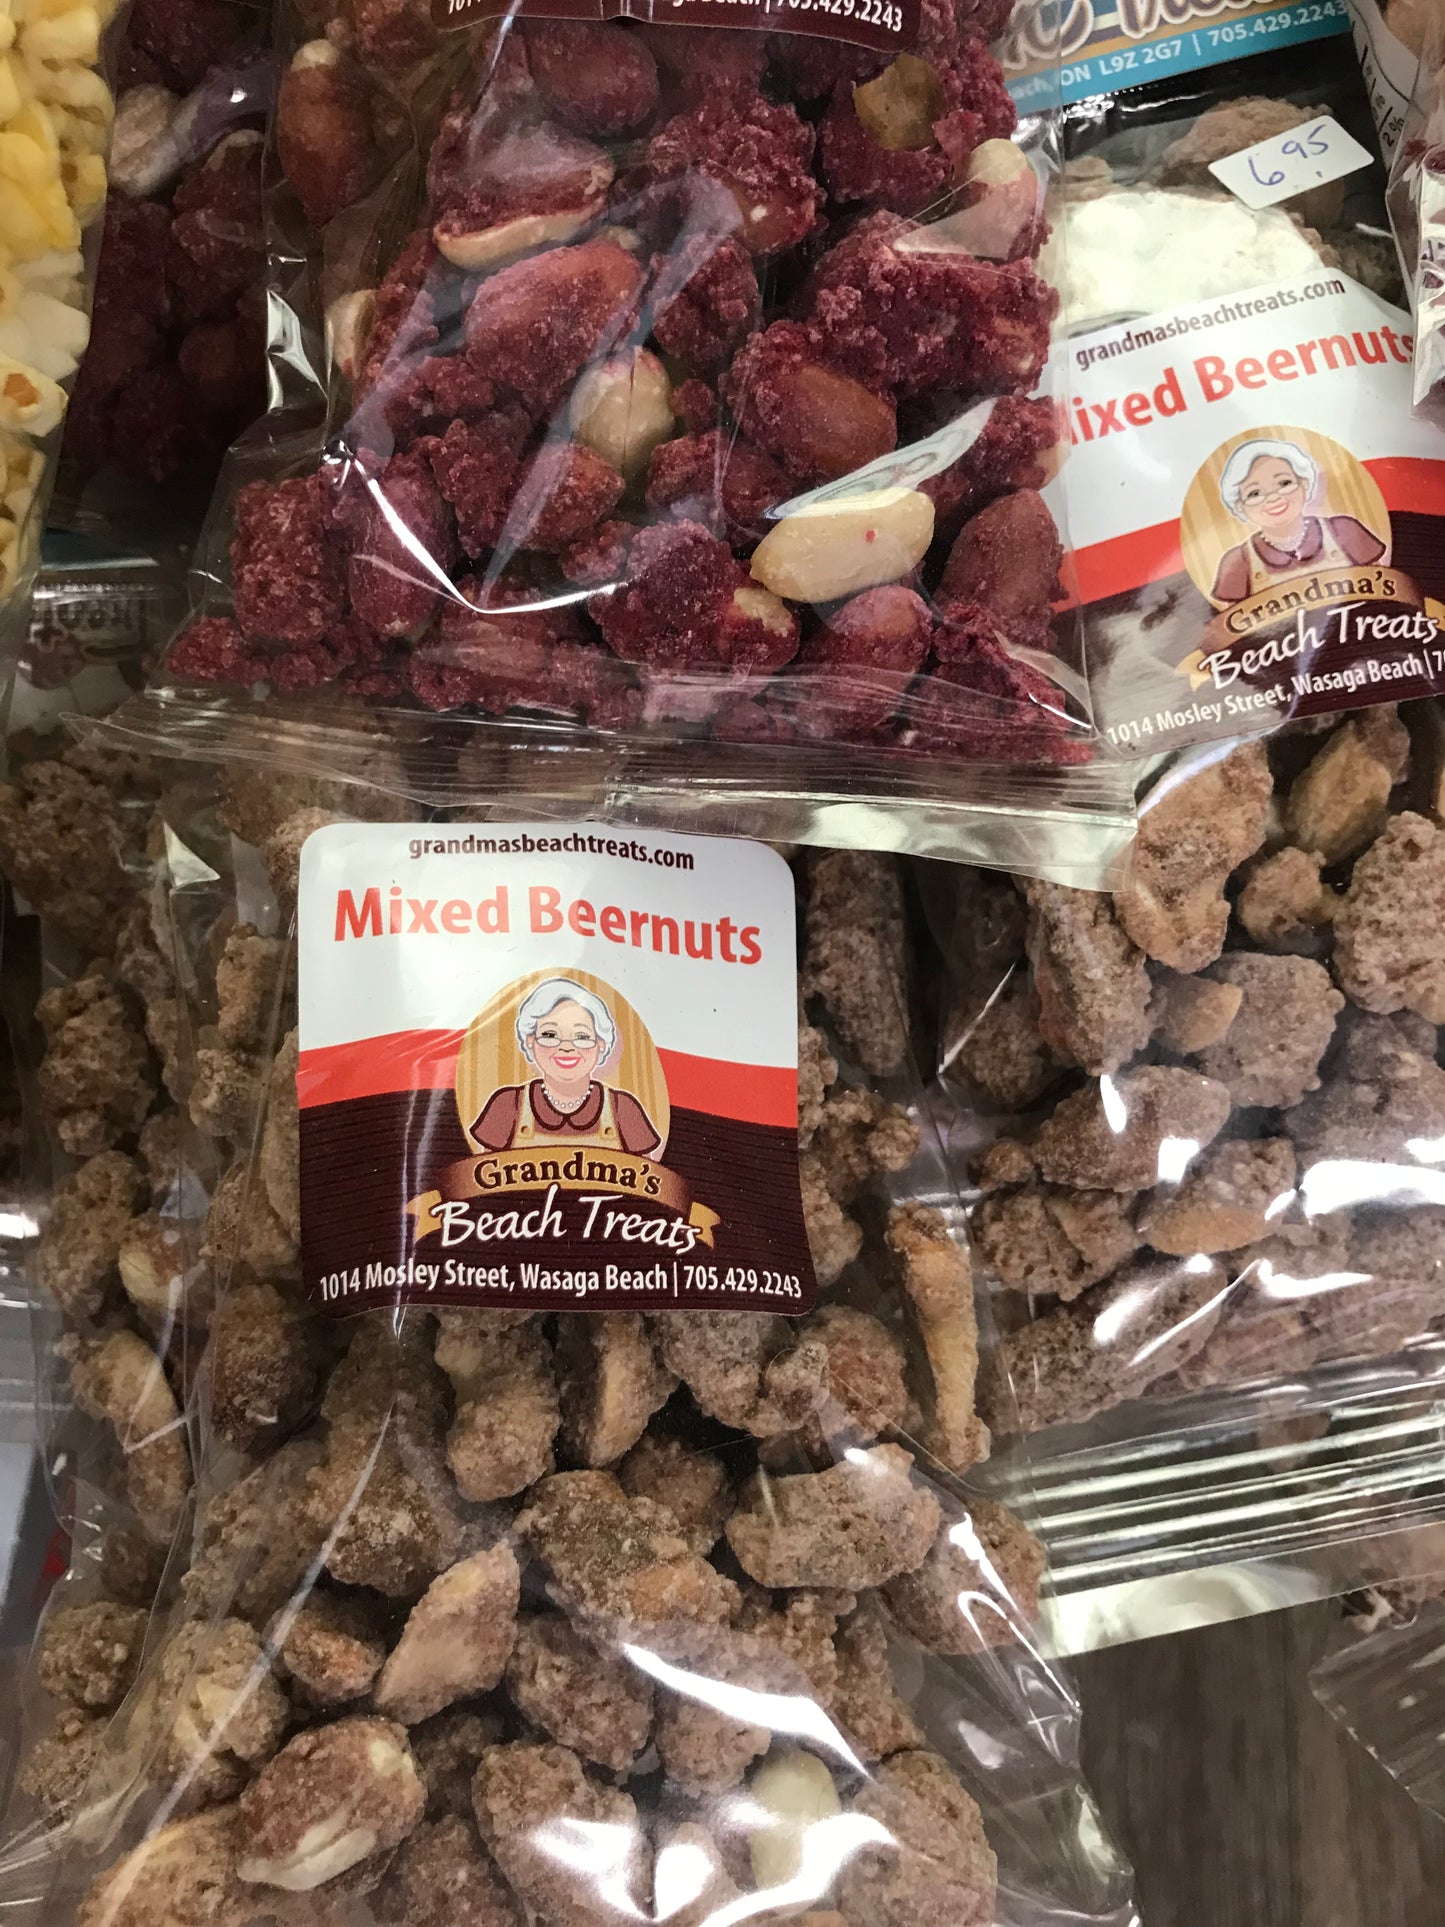 Beernuts